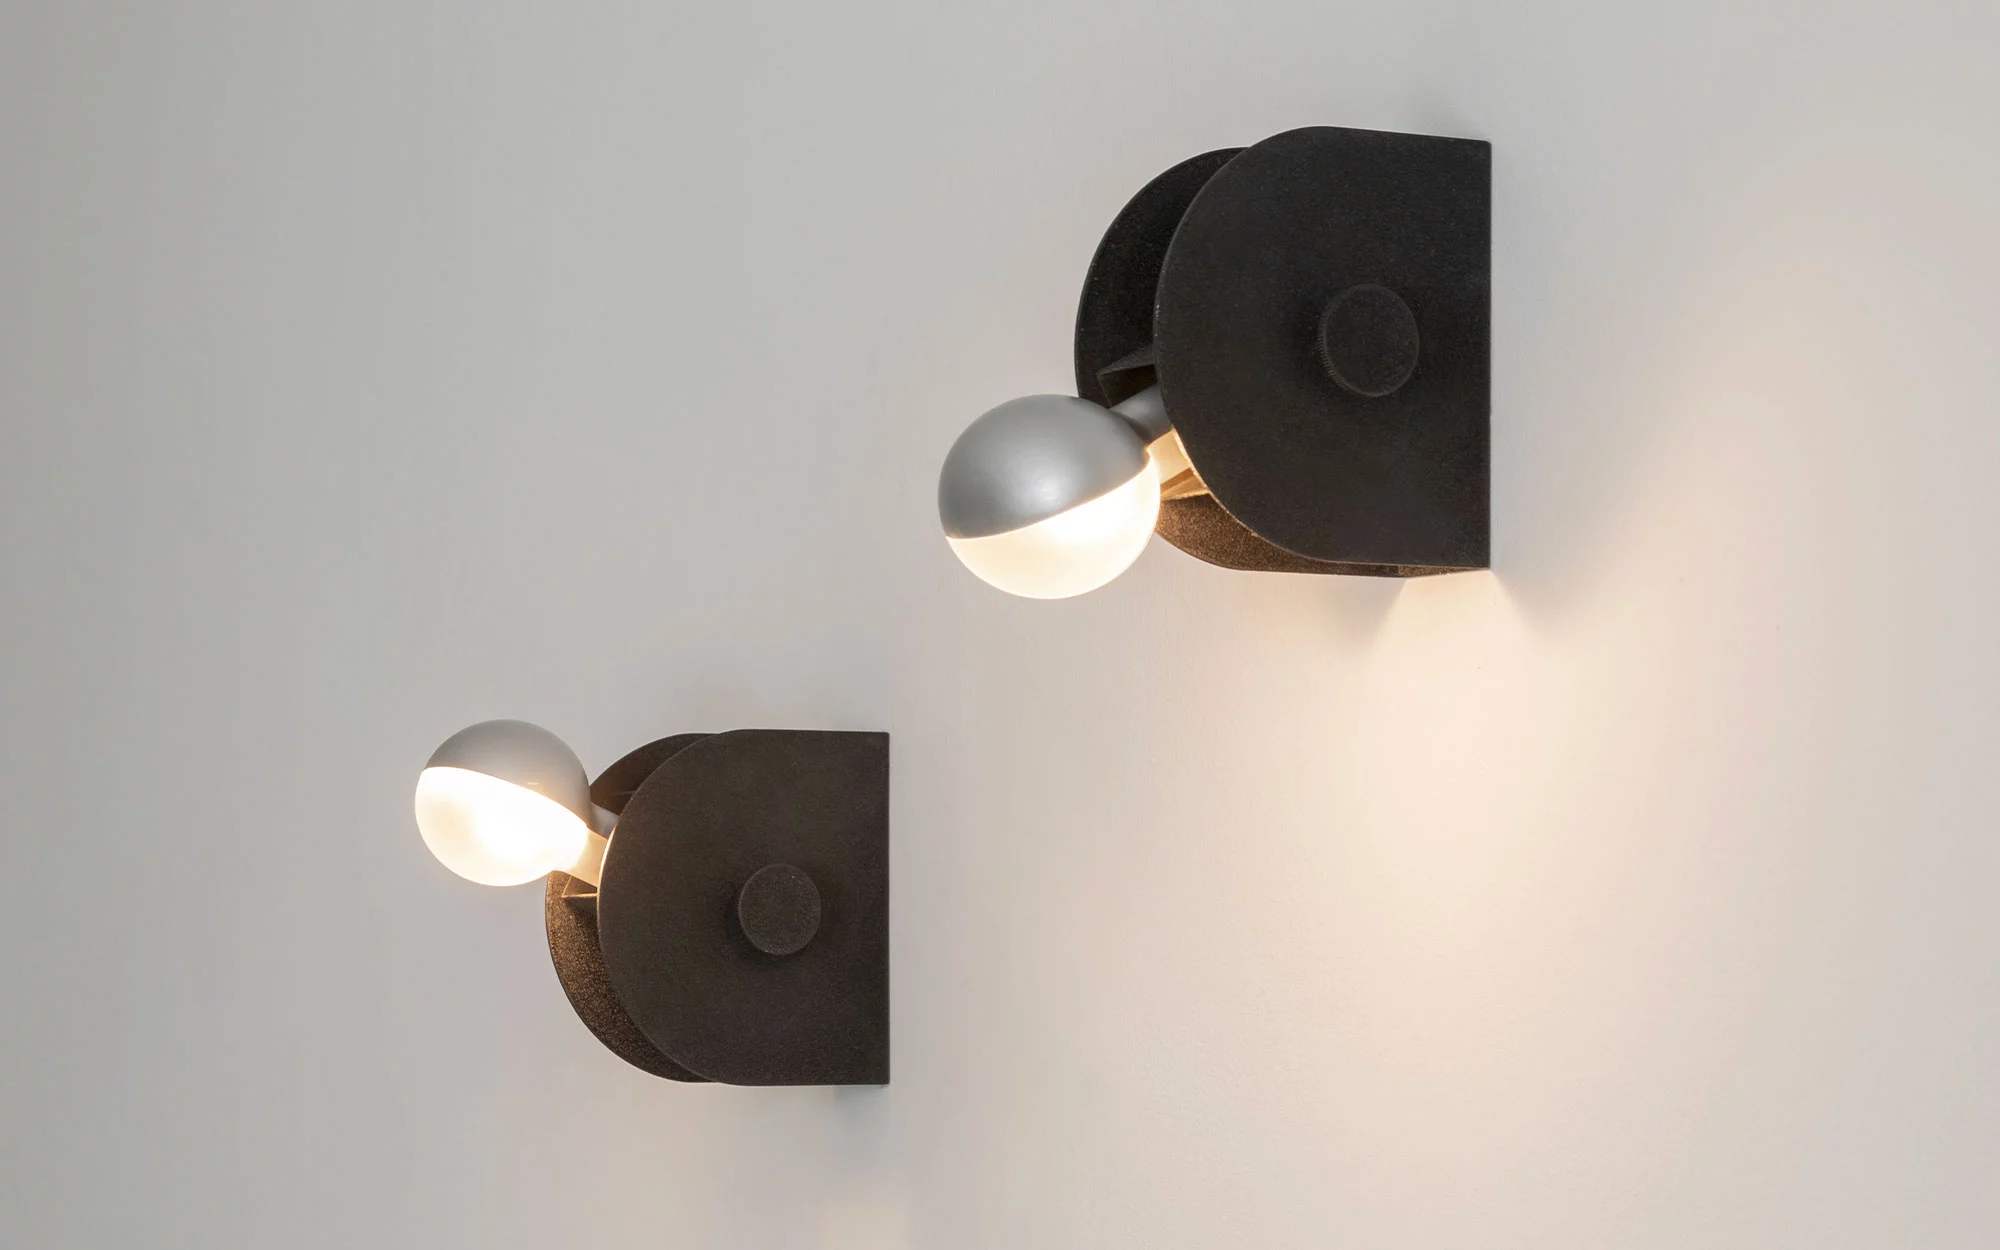 43 - Gino Sarfatti - Table light - Galerie kreo